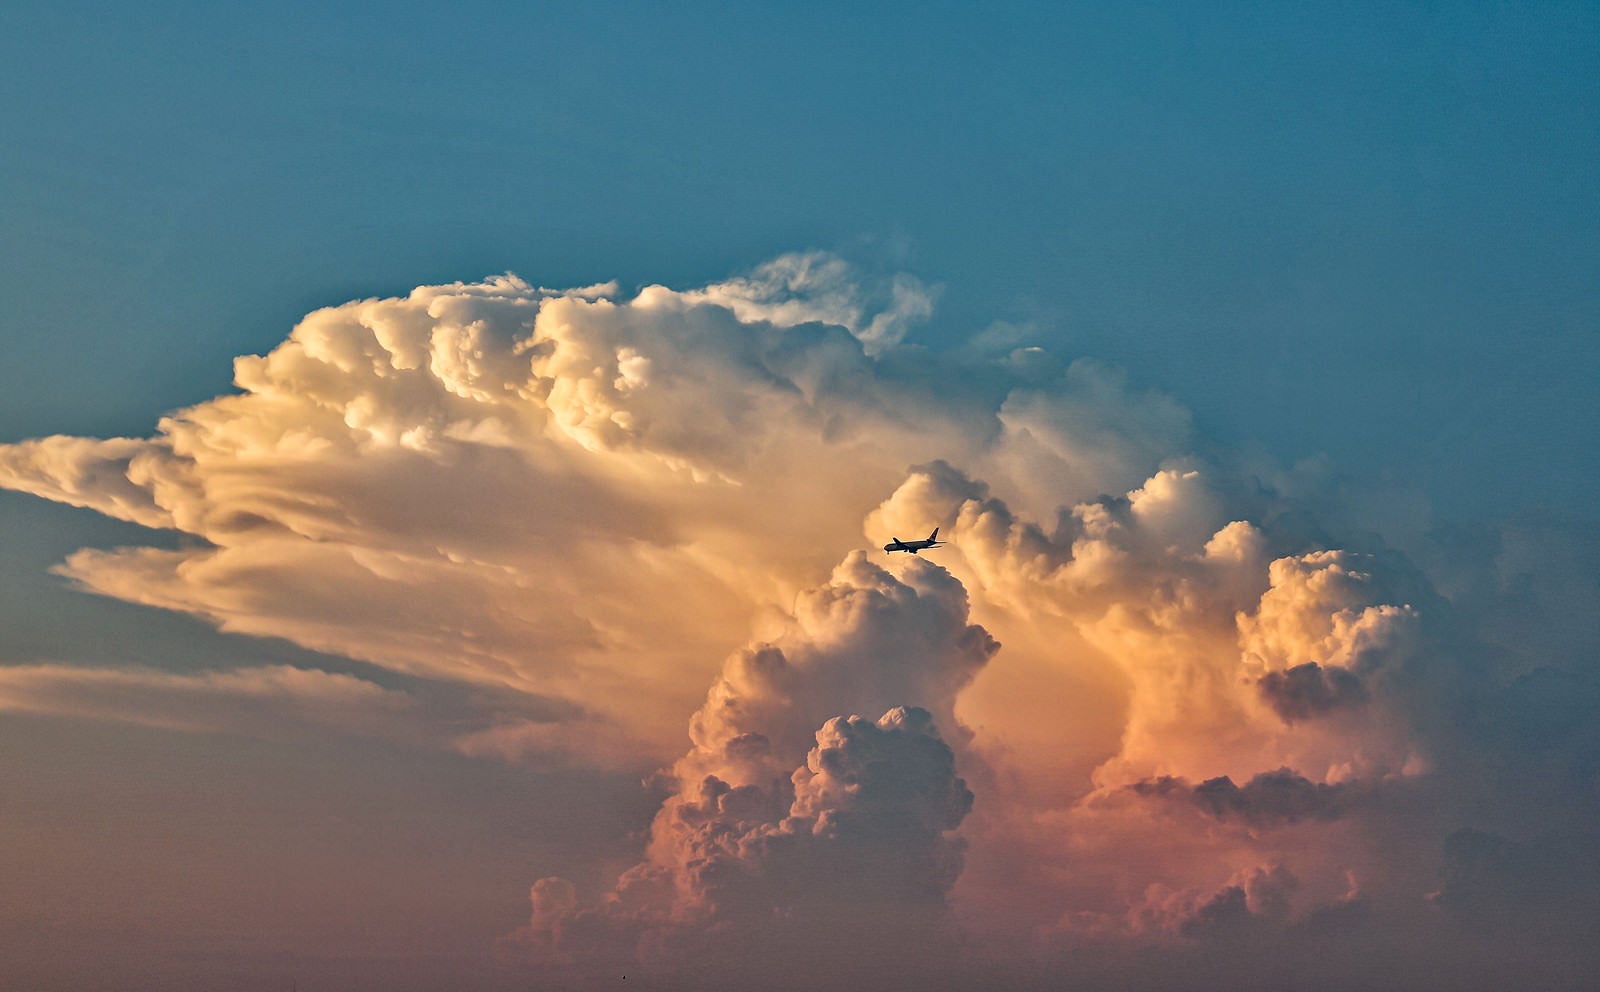 「夕焼けに染まる入道雲と飛行機」の写真